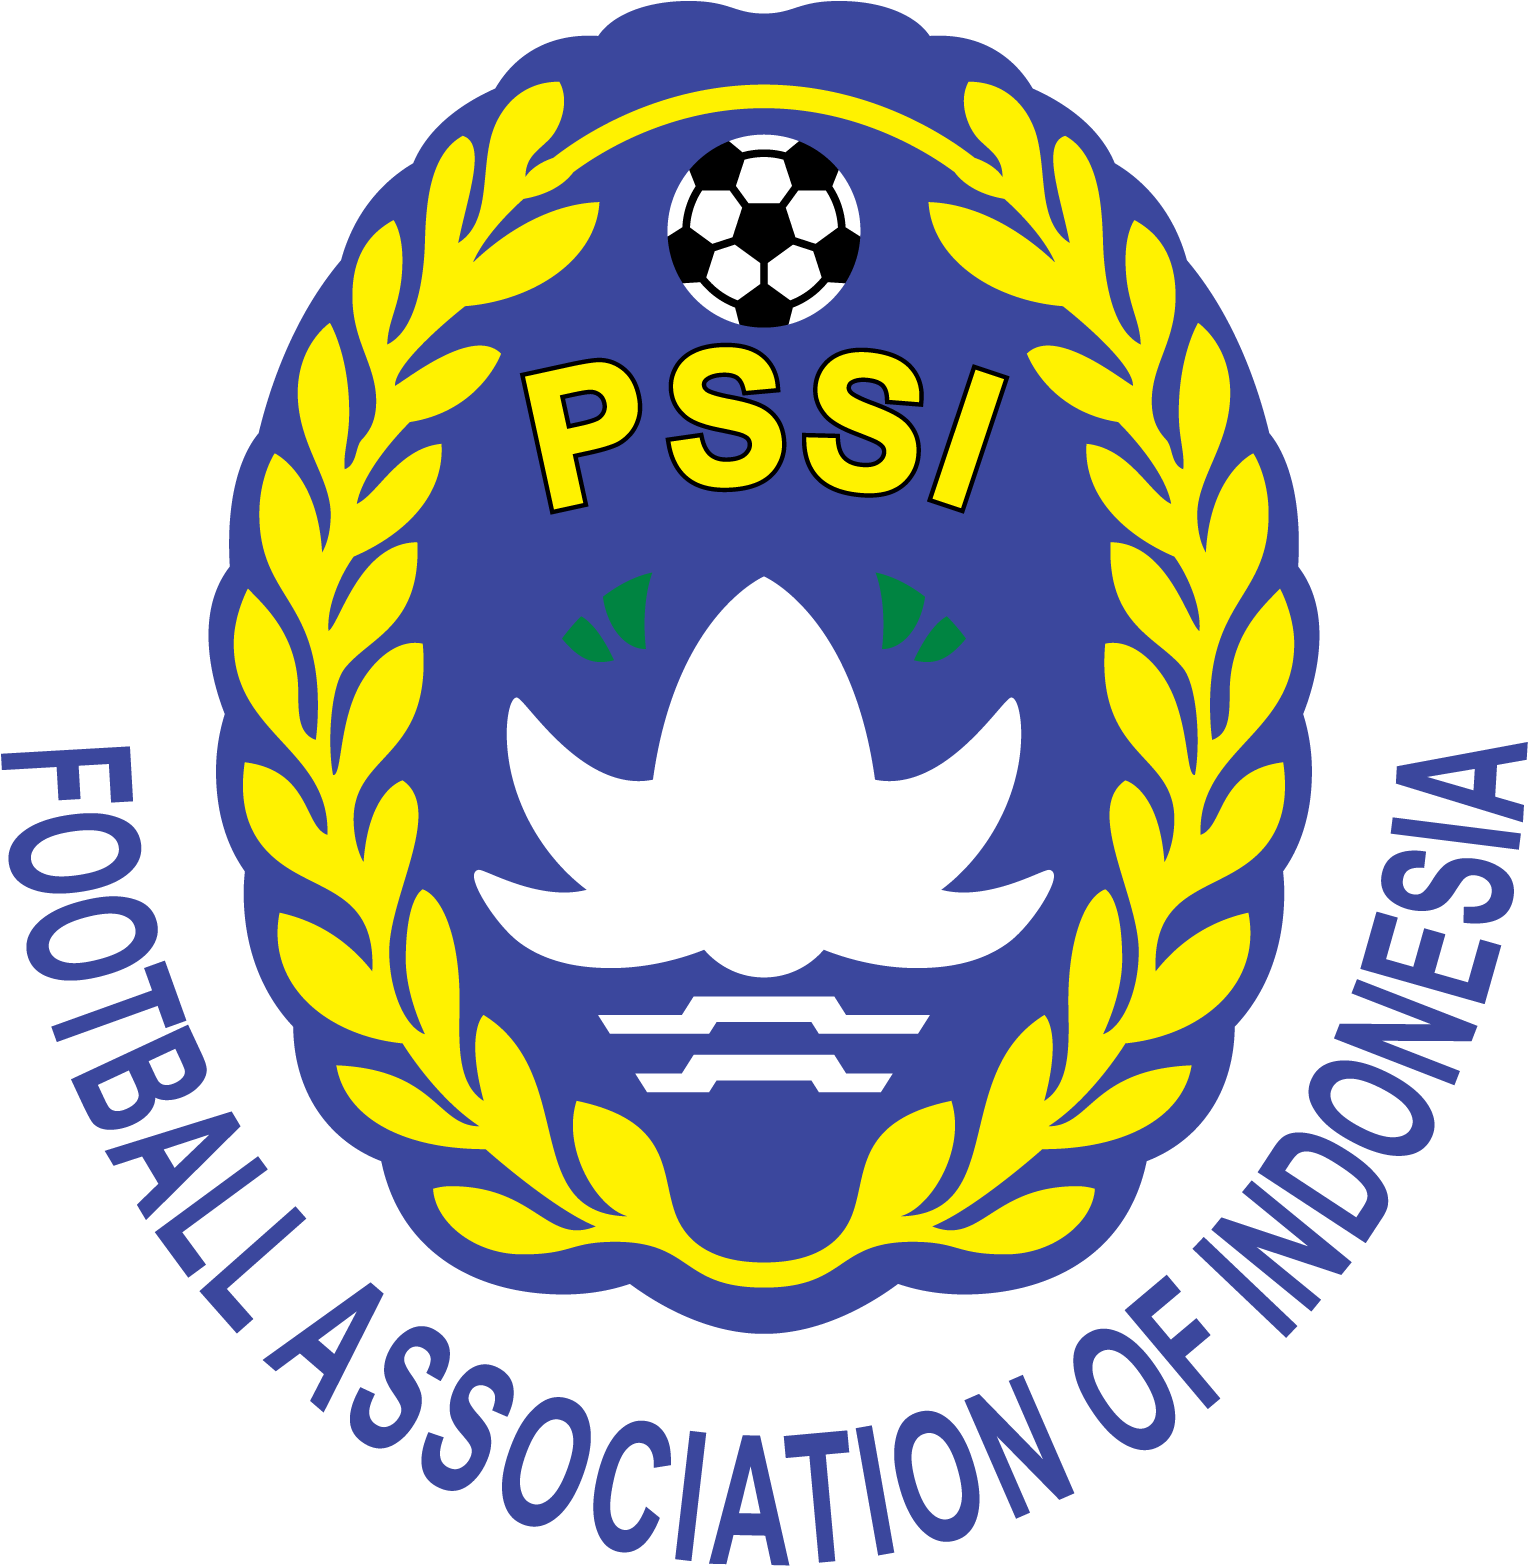 Persatuan Sepak Bola Seluruh Indonesia (PSSI)